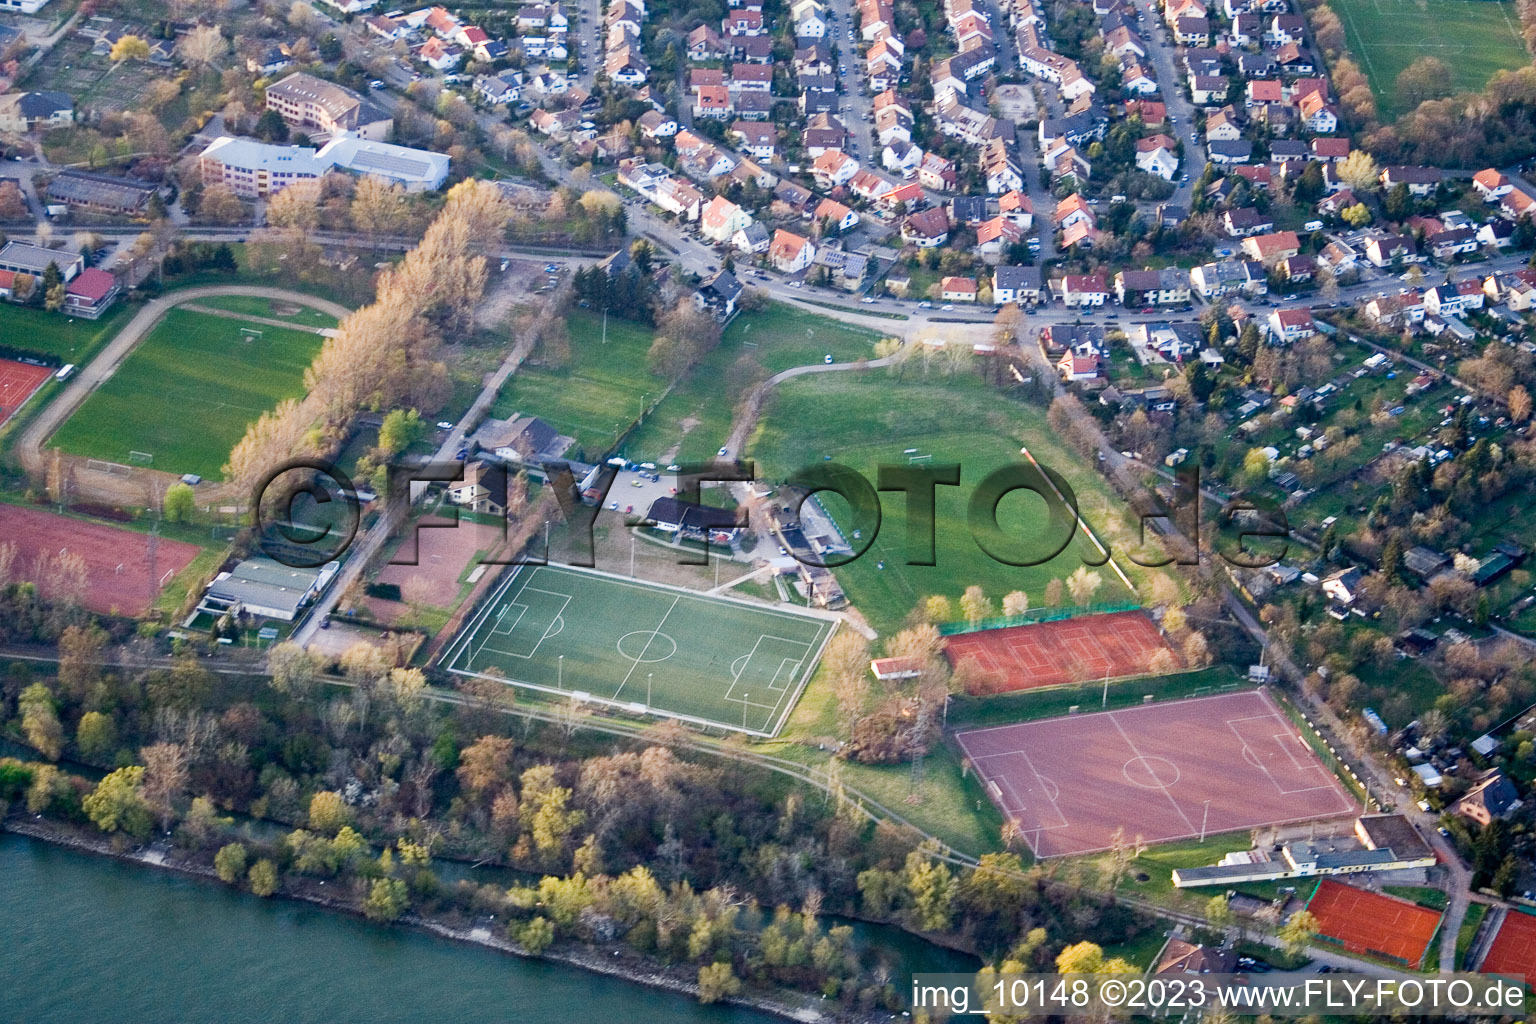 Luftbild von Sportanlagen VfL Kurpfalz im Ortsteil Neckarau in Mannheim im Bundesland Baden-Württemberg, Deutschland